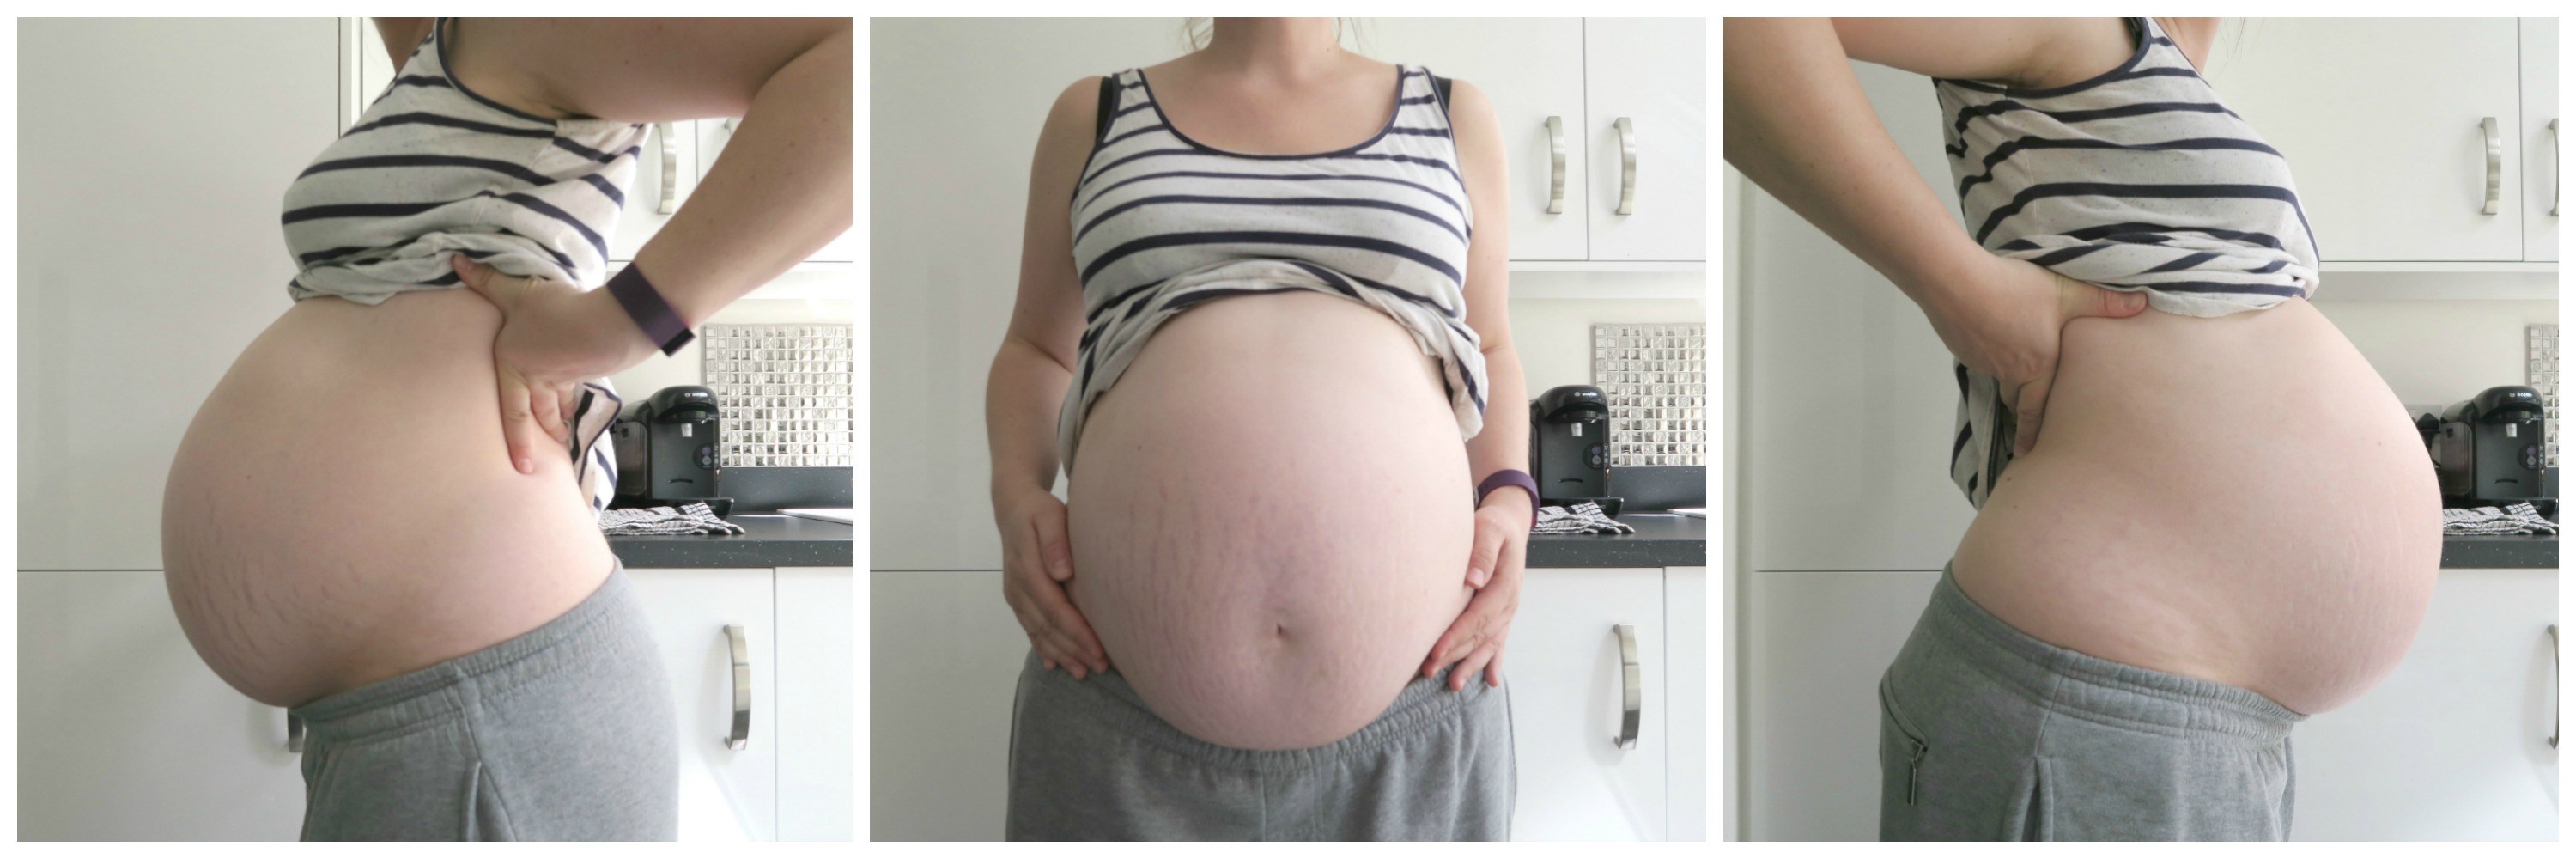 Шевеления на 37 неделе. Живот на 37 неделе. 35-36 Недель беременности. Малыш на 37 неделе беременности в животе.